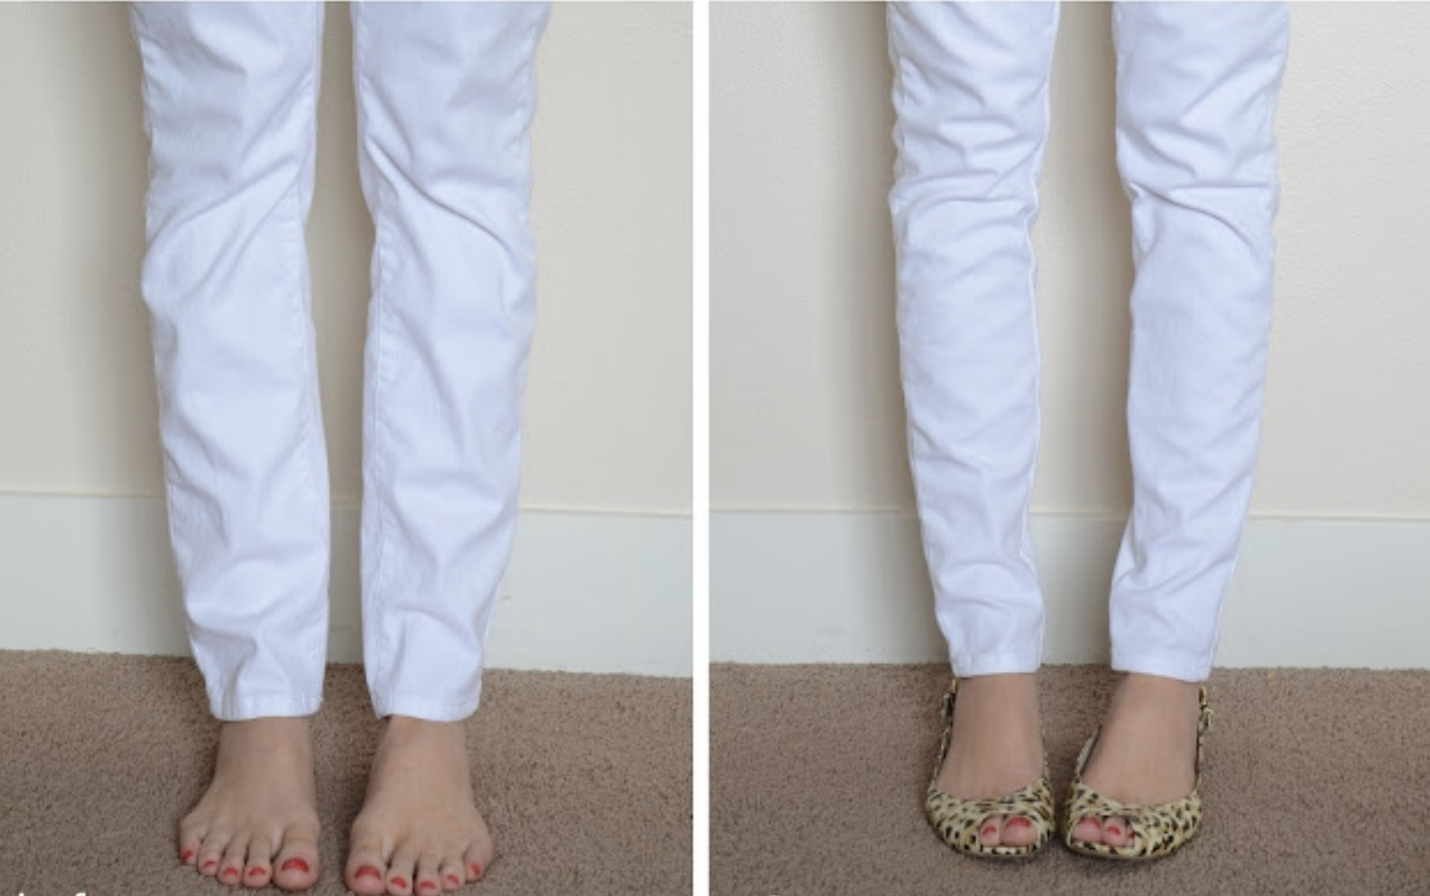 Как ушить джинсы по бокам в домашних условиях? как ушить джинсы в поясе, в талии?